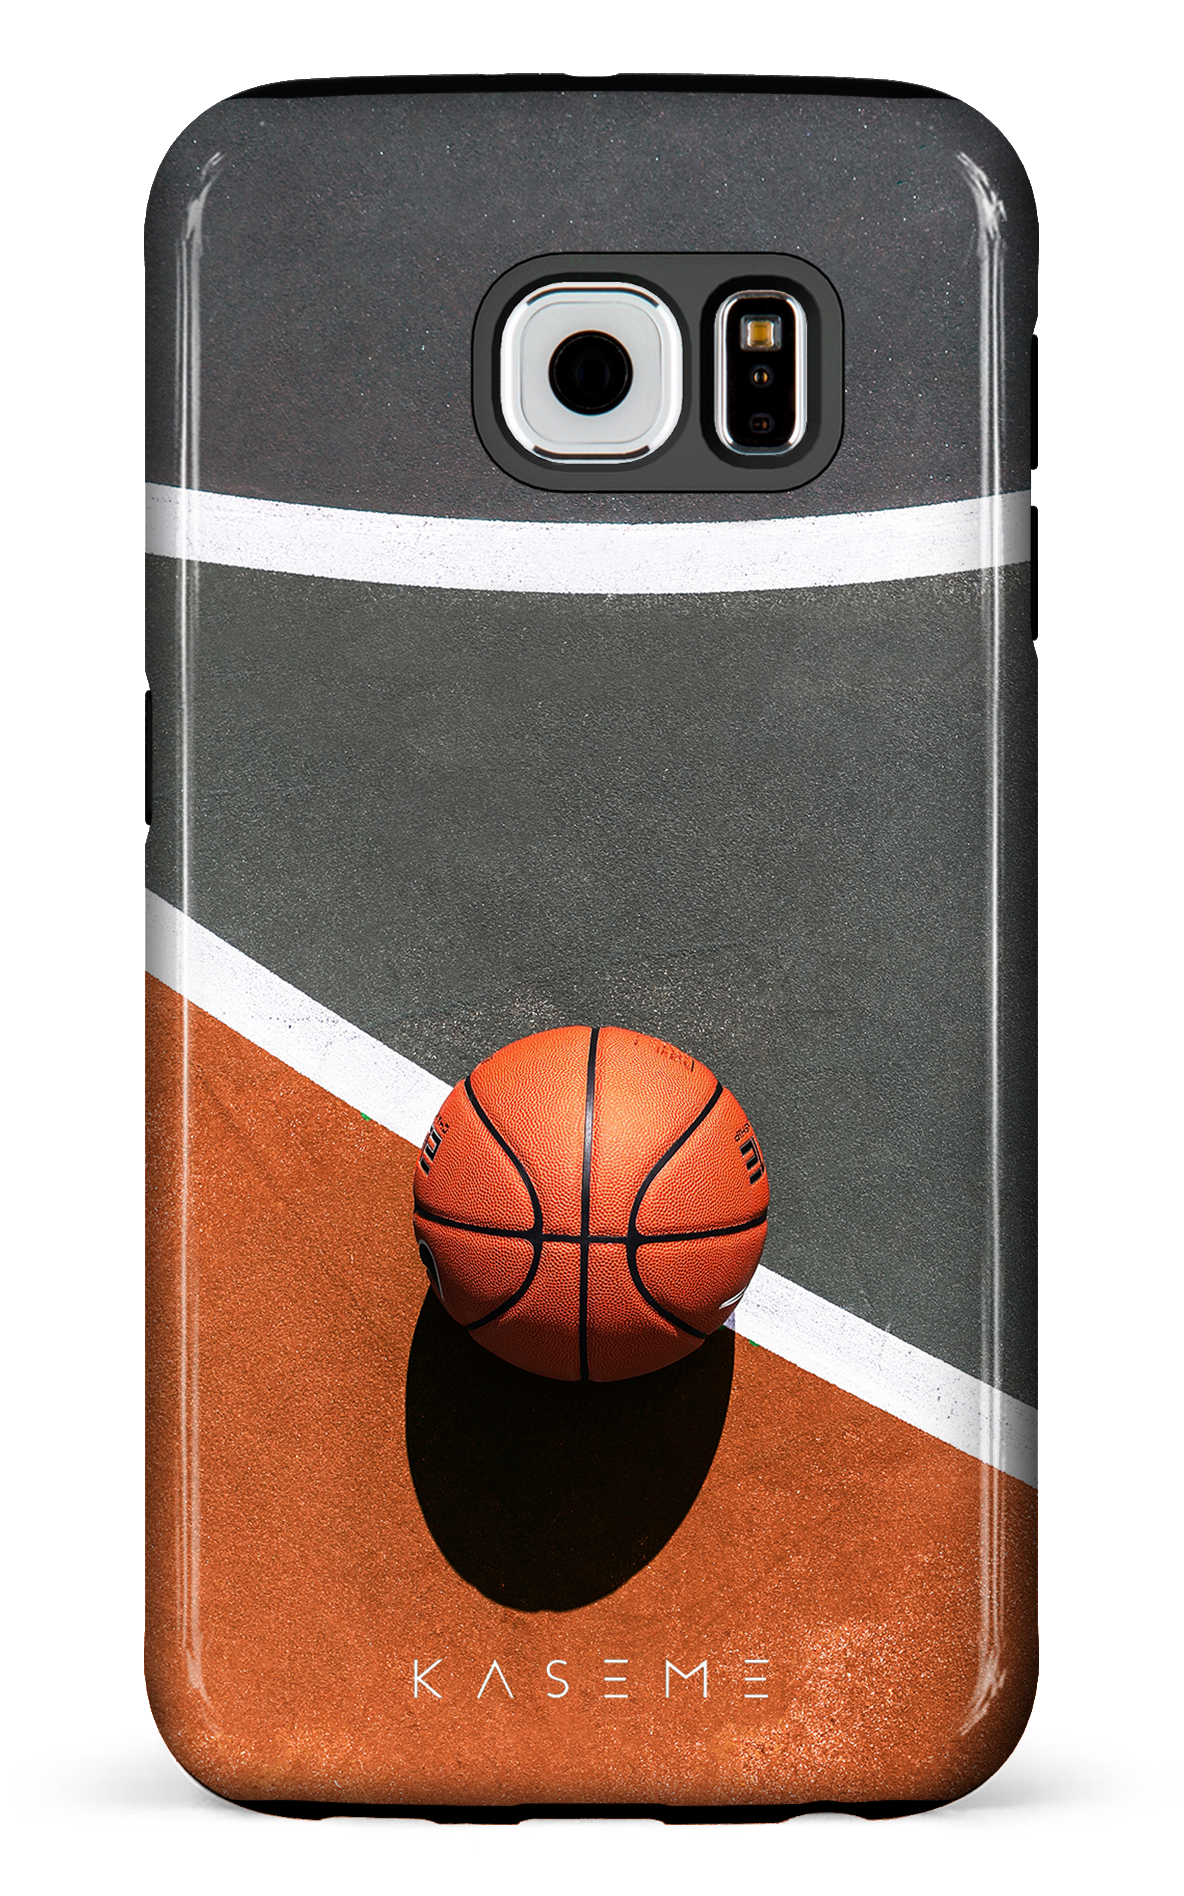 Baller - Galaxy S6